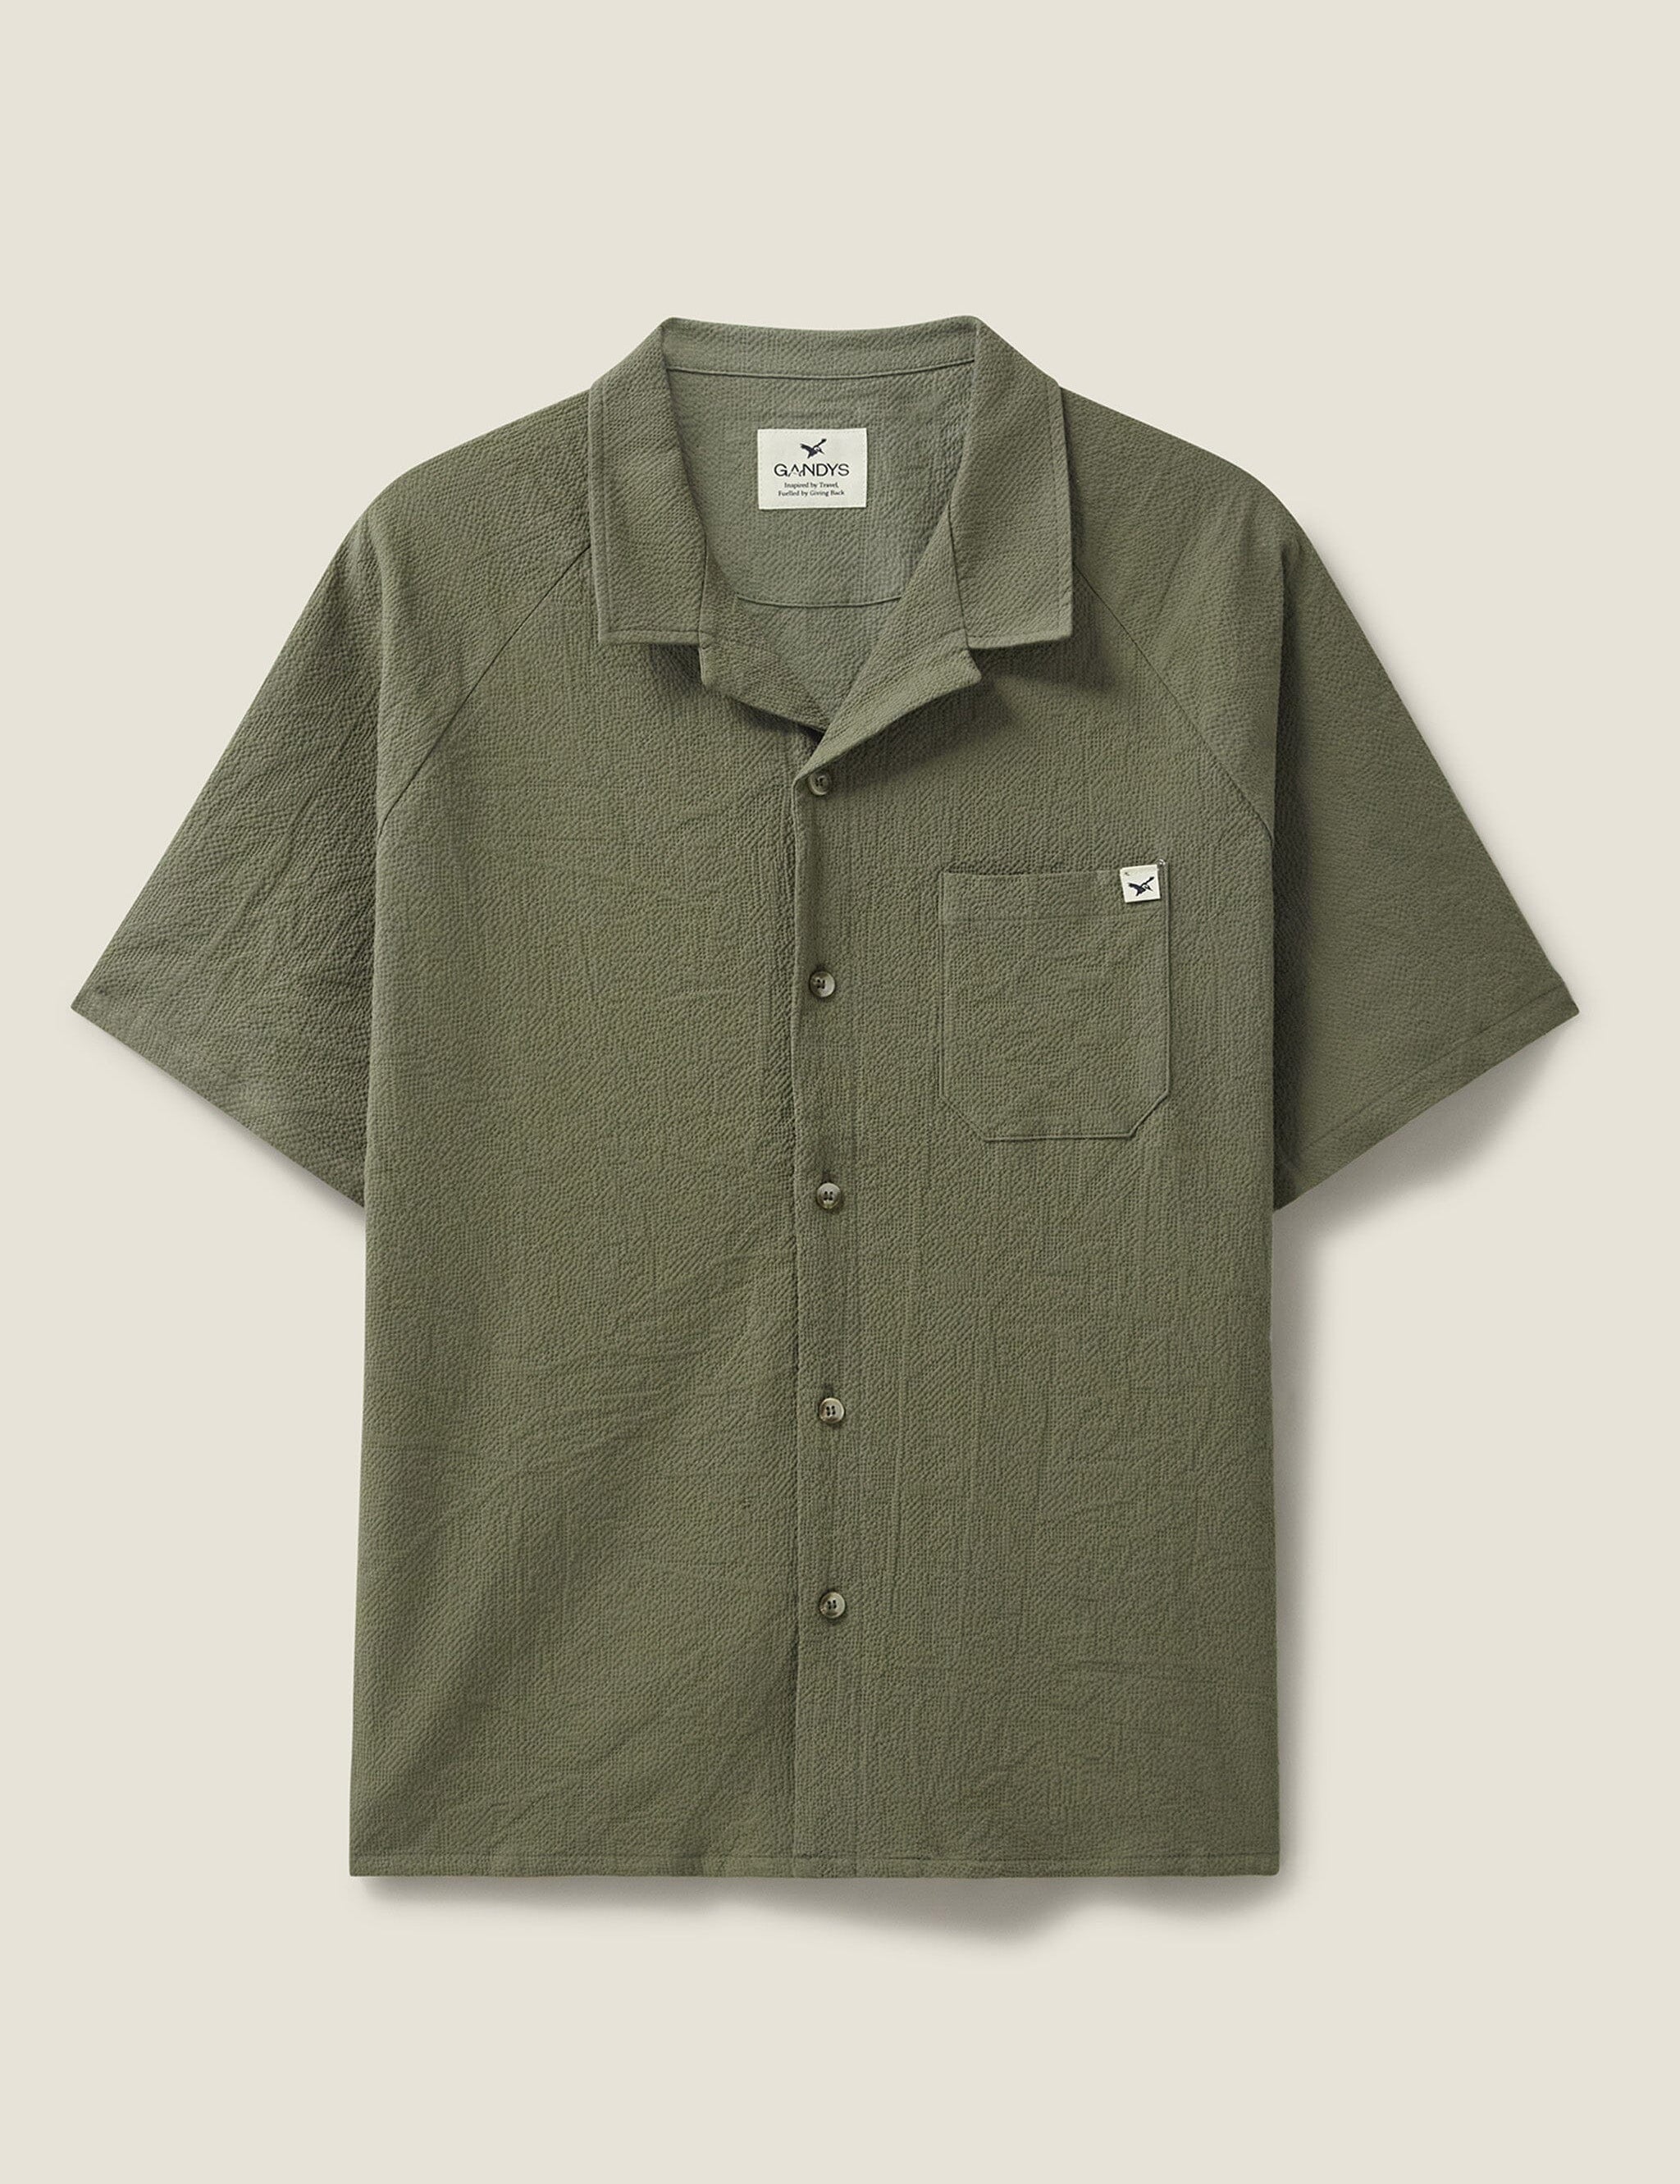 khaki-zapata-cuban-collar-shirt-162386.jpg